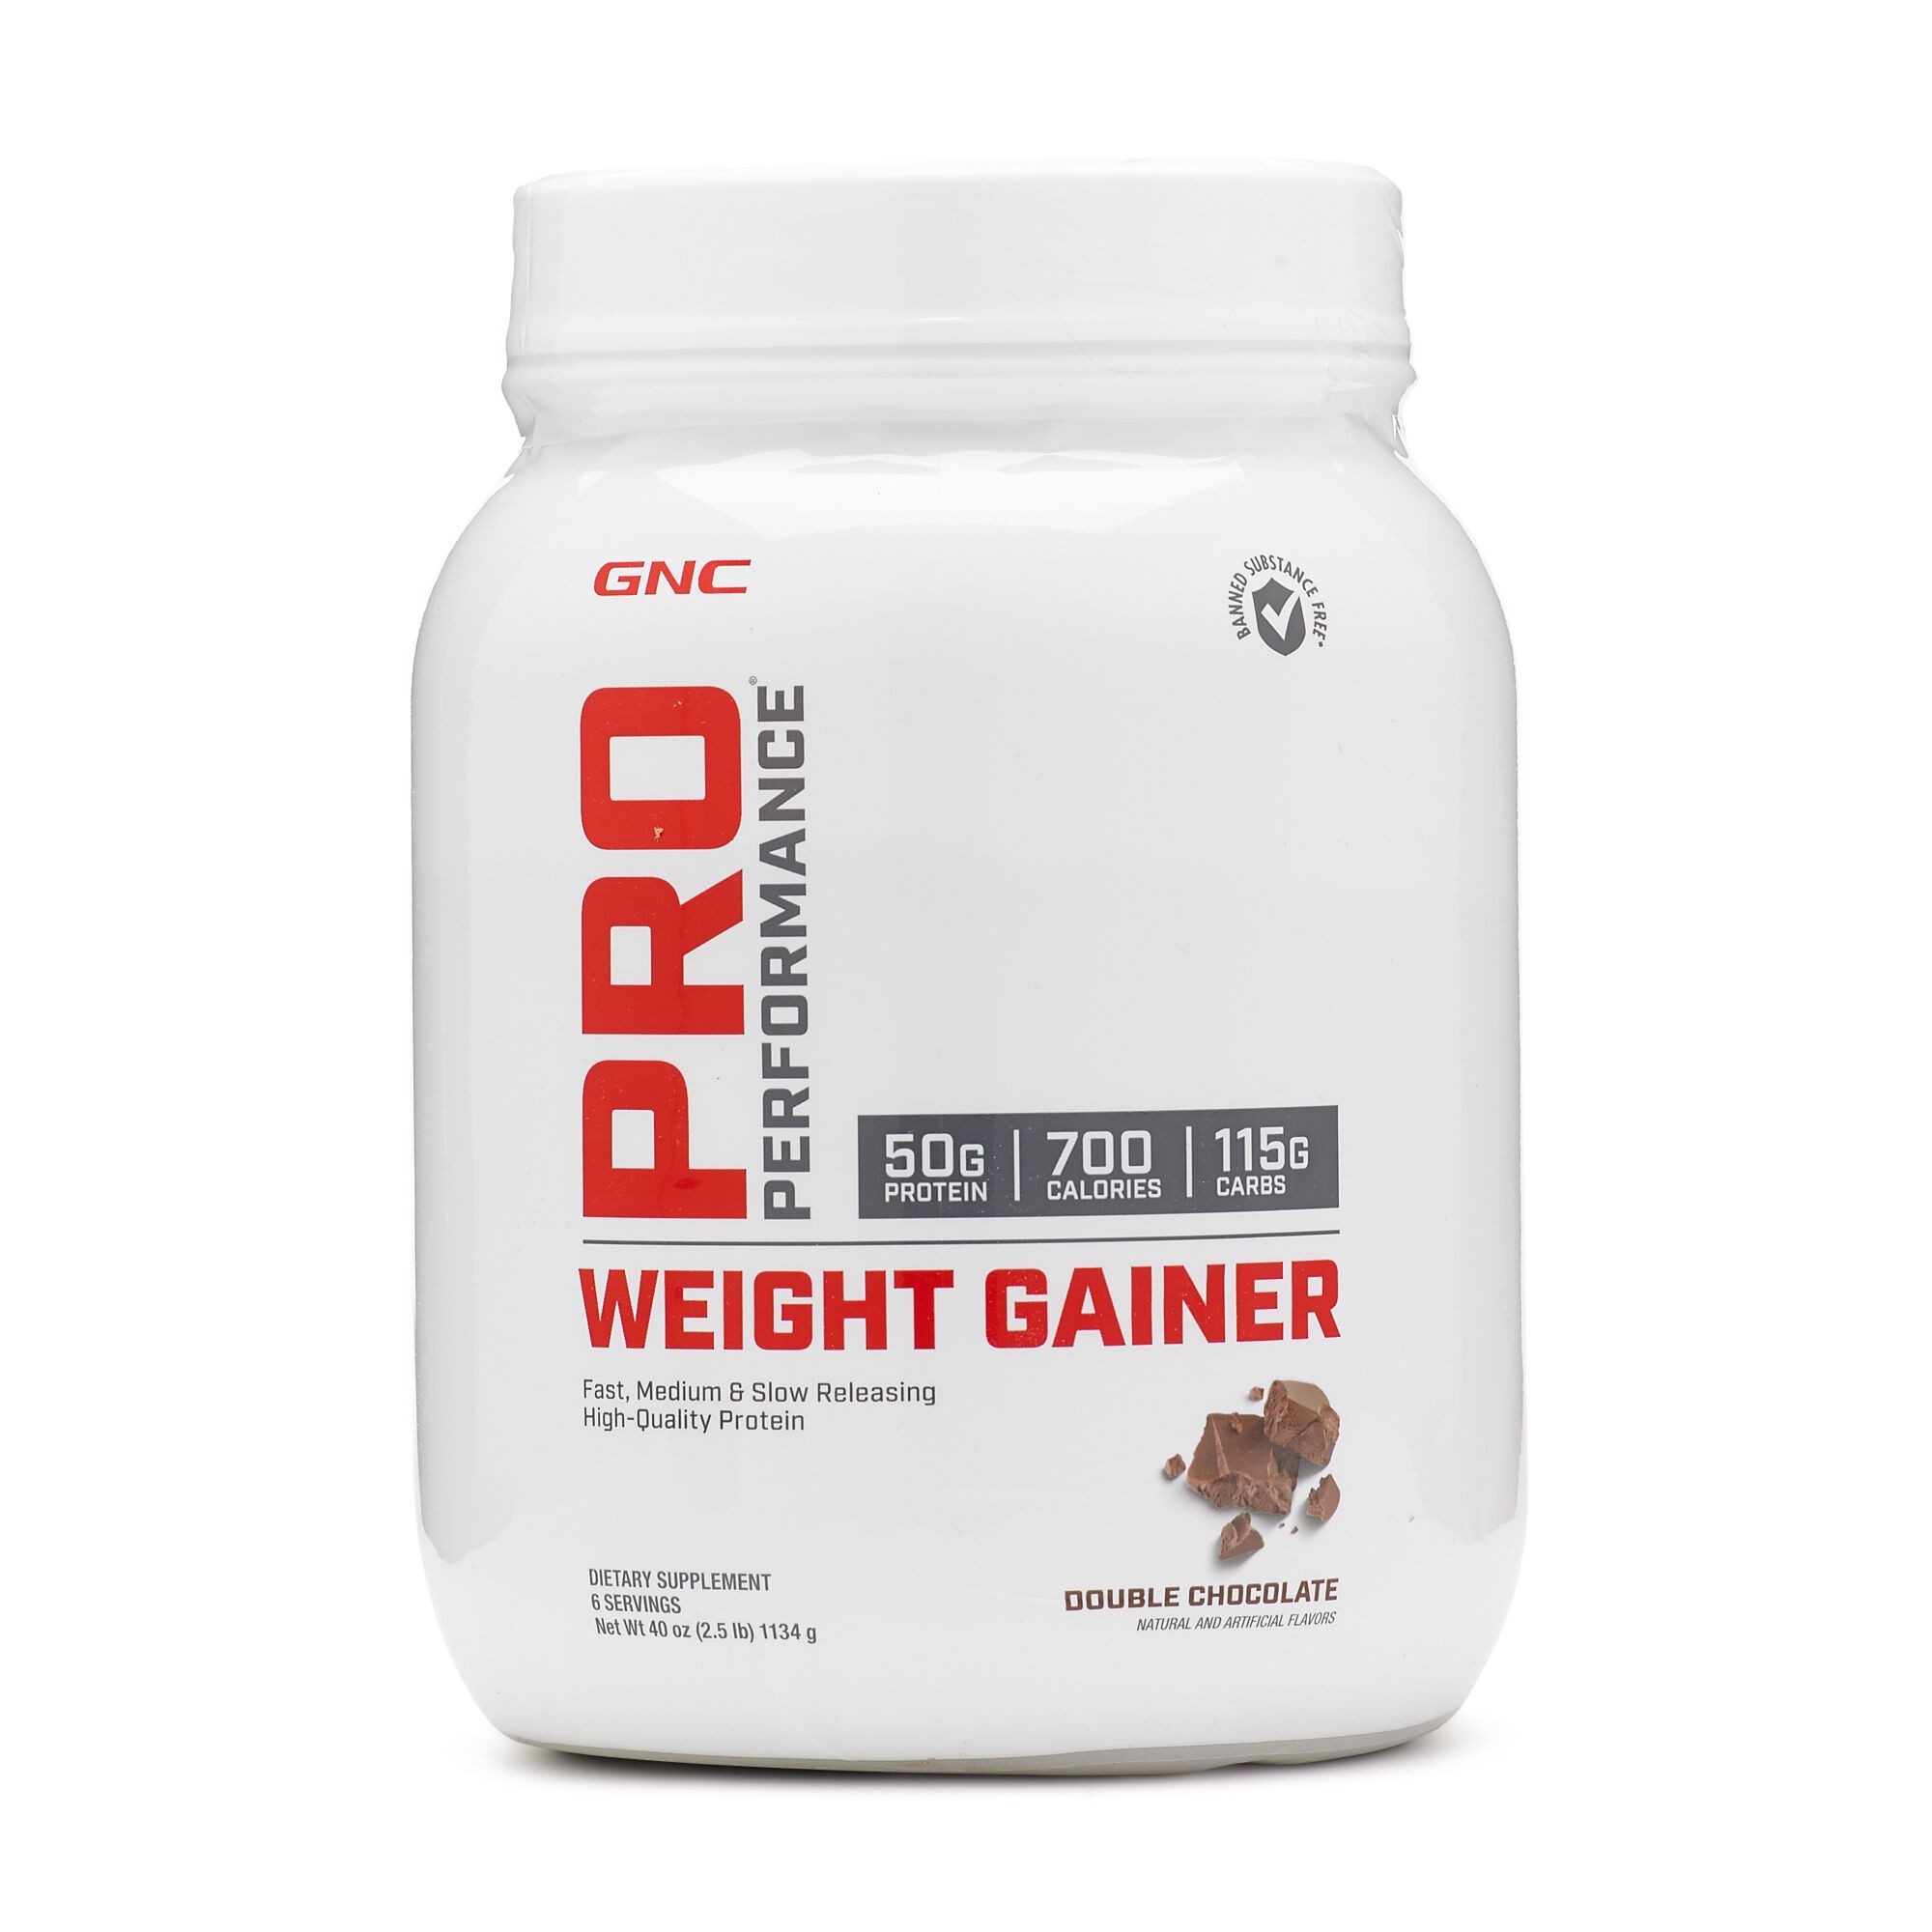 Produse proteice (creșterea masei musculare) - Pro Performance Weight Gainer, Formula Proteica Pentru Crestere In Greutate, cu Aroma de Ciocolata 1134 g, GNC, farmaciamare.ro